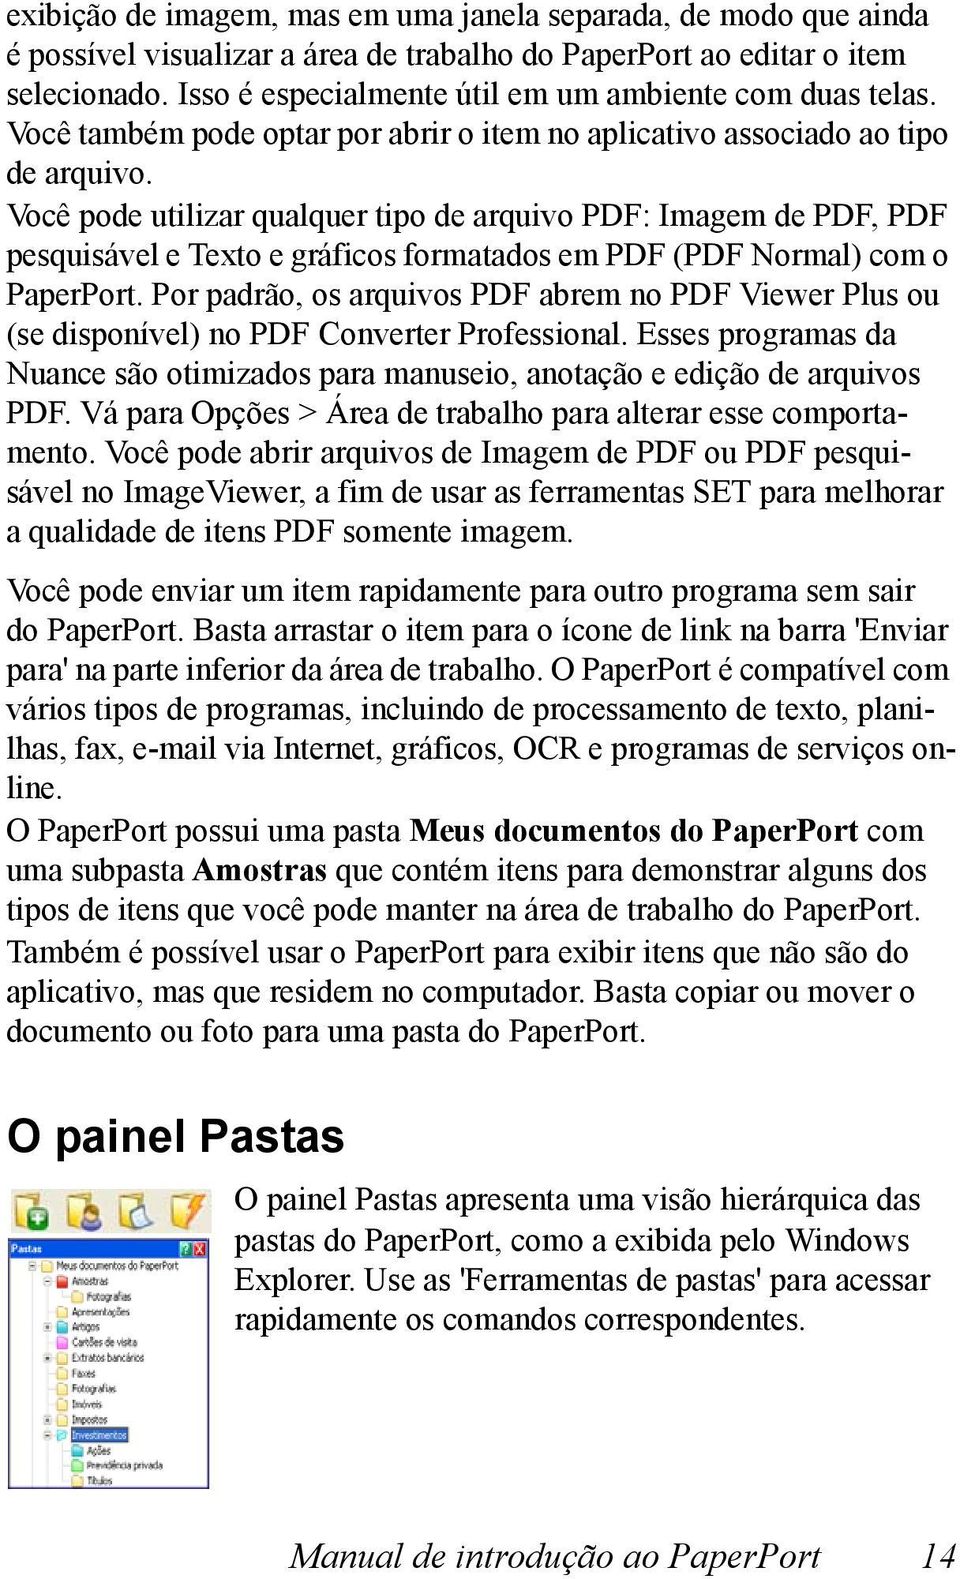 Você pode utilizar qualquer tipo de arquivo PDF: Imagem de PDF, PDF pesquisável e Texto e gráficos formatados em PDF (PDF Normal) com o PaperPort.